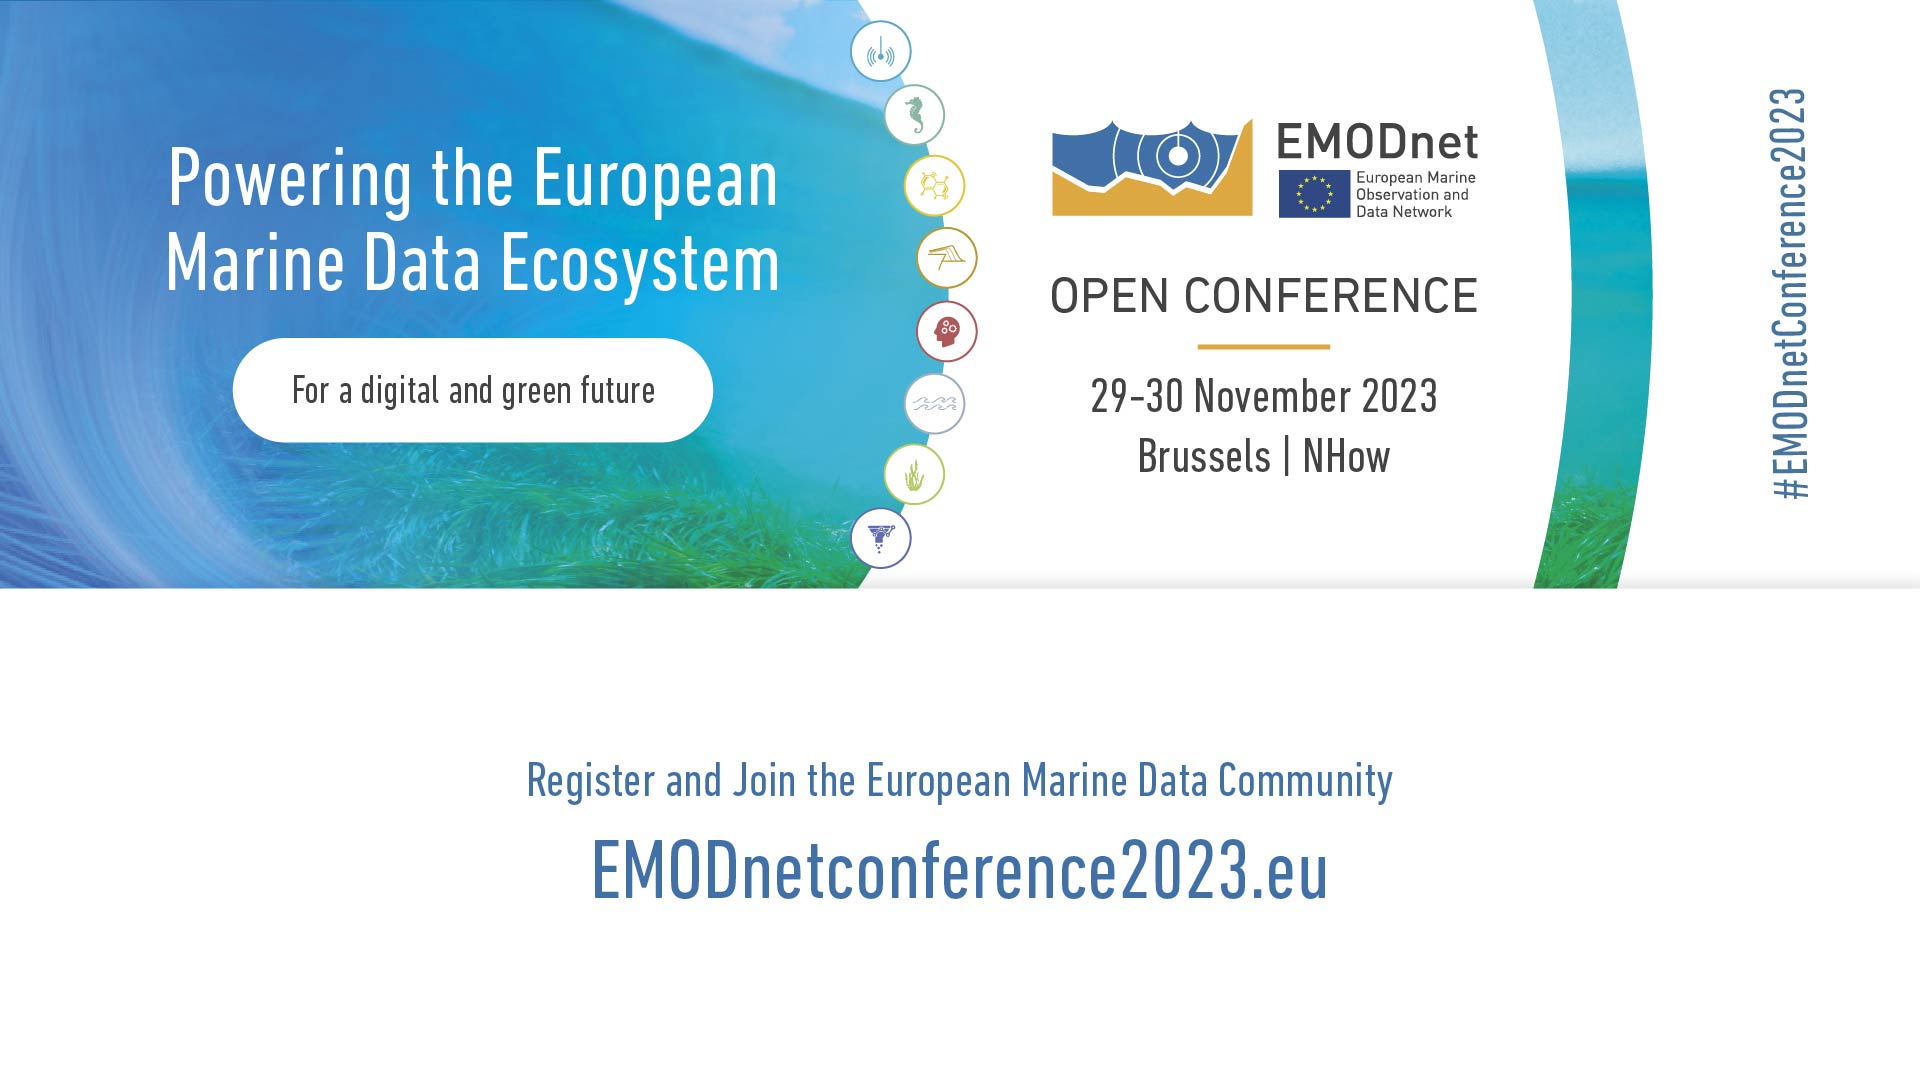 EMODnet open conference 2023